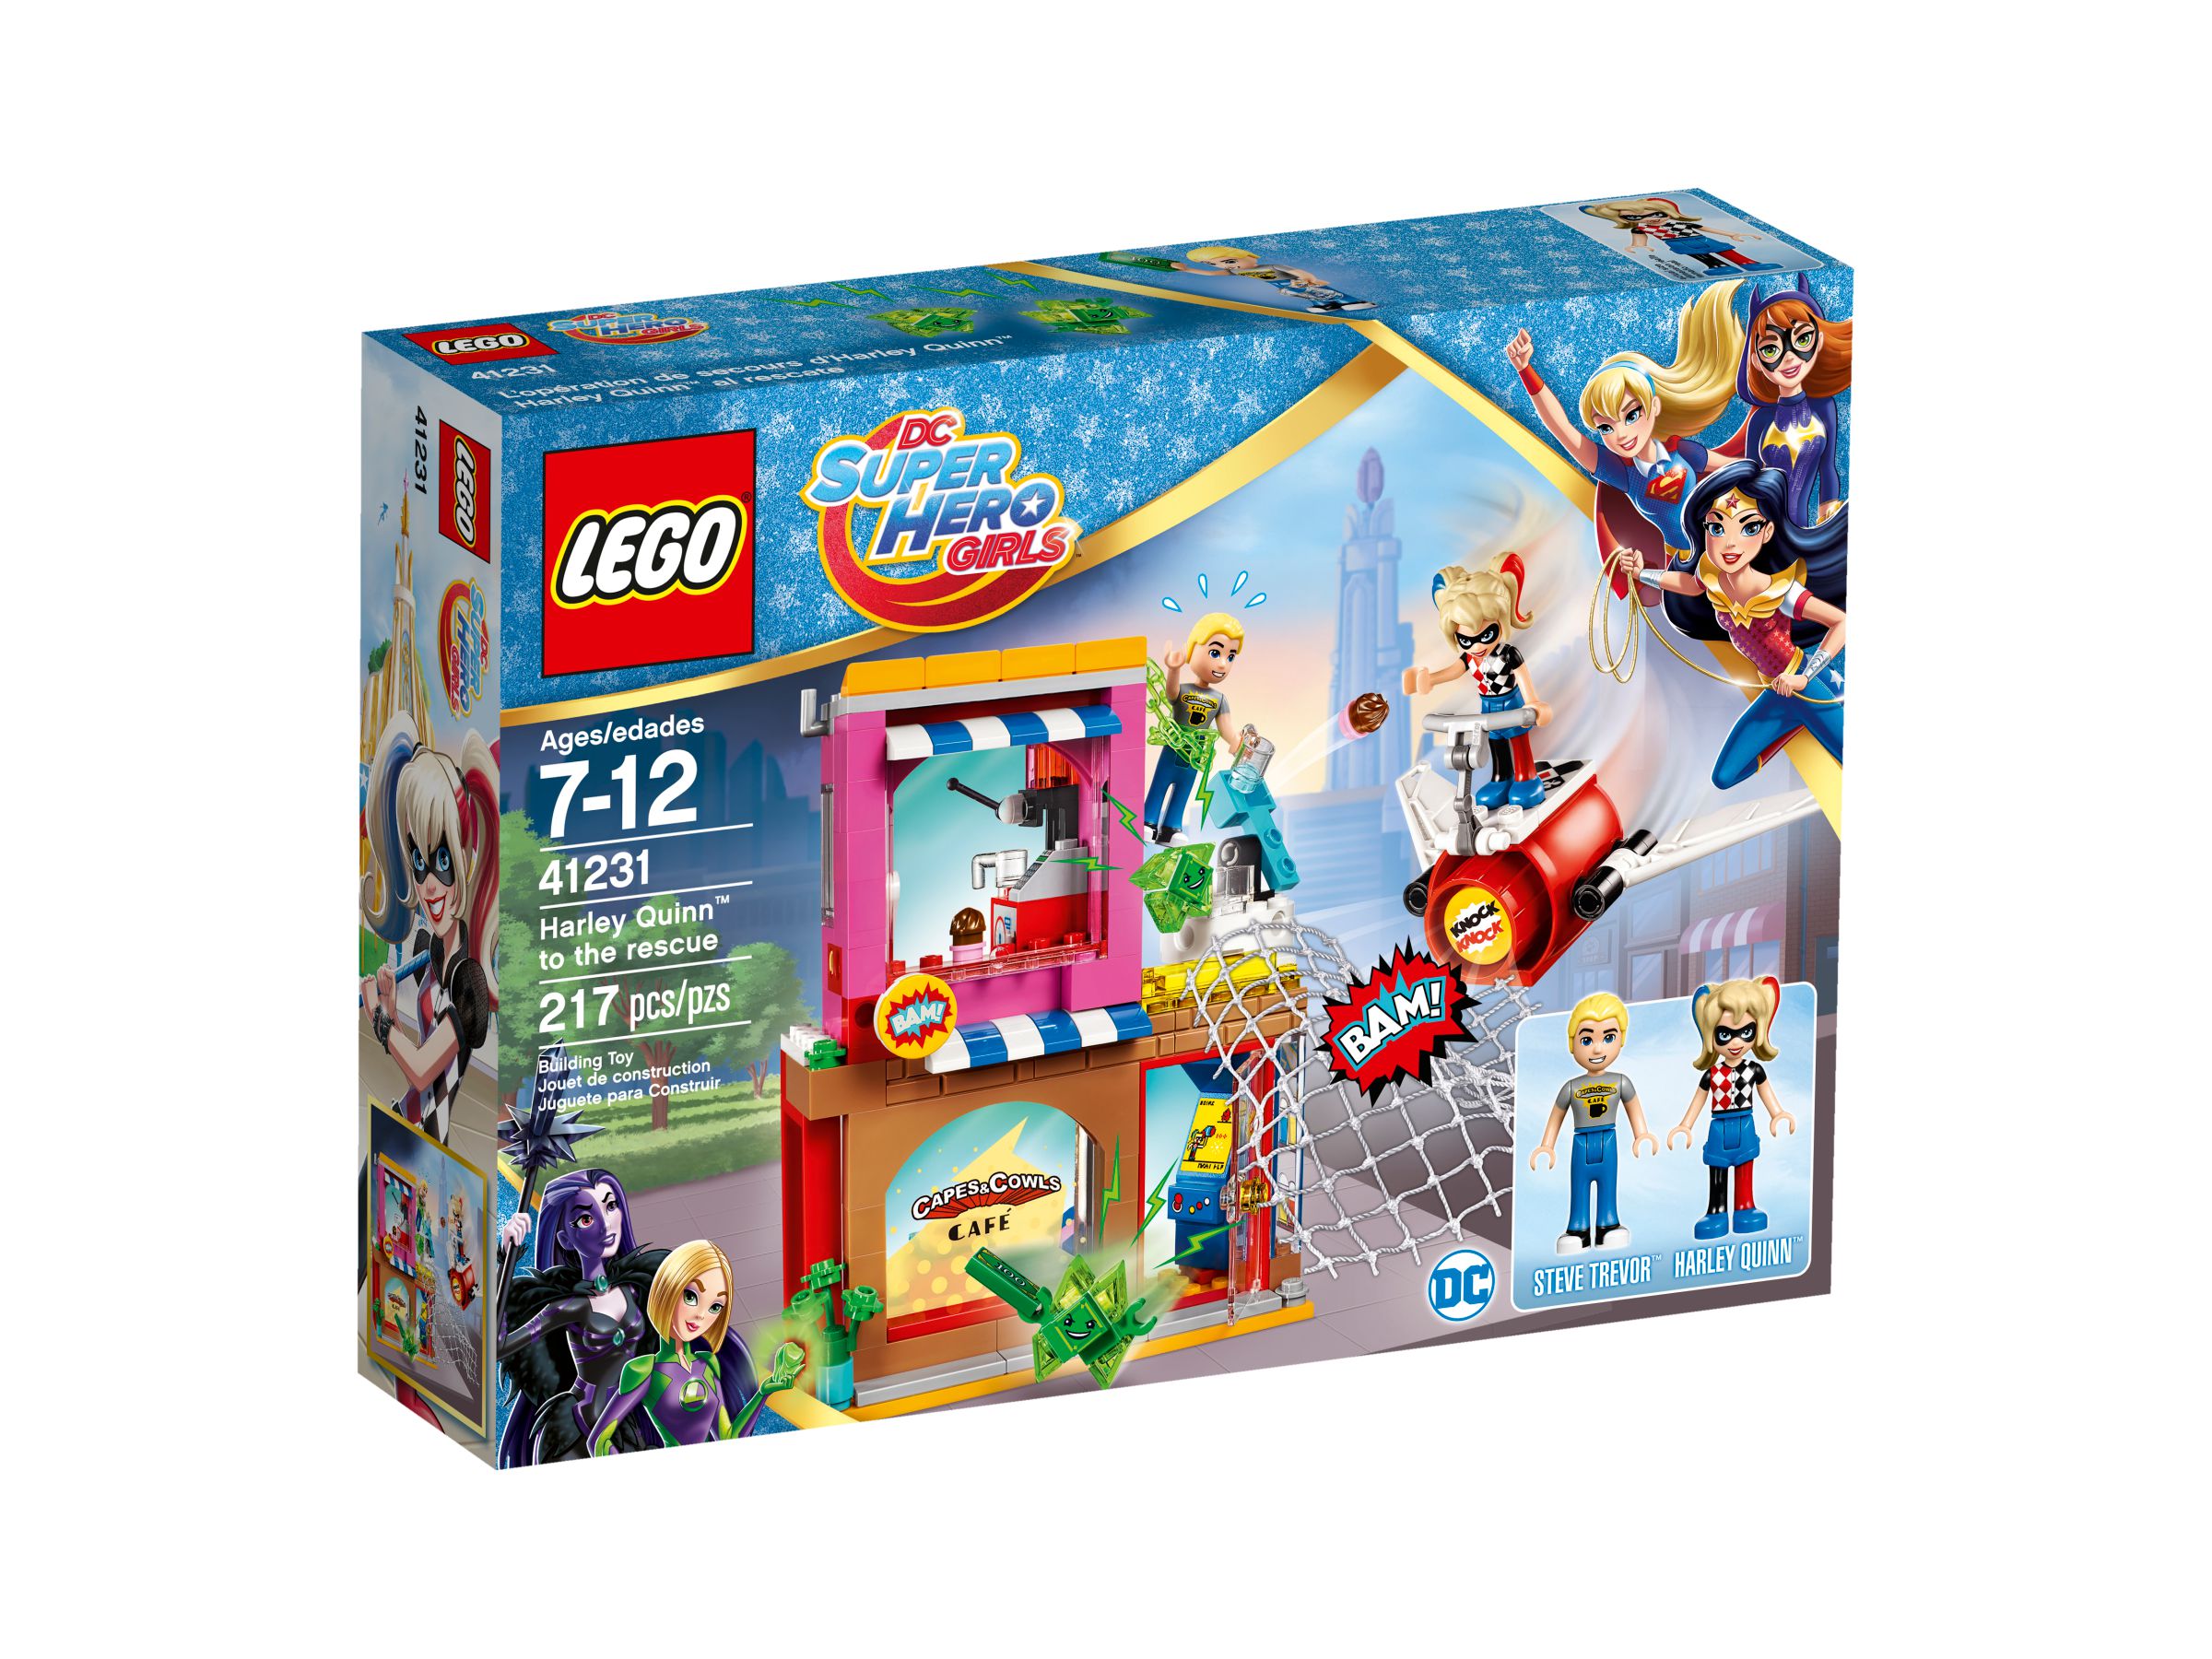 LEGO DC Super Hero Girls 41231 Harley Quinn™ eilt zu Hilfe LEGO_41231_alt1.jpg